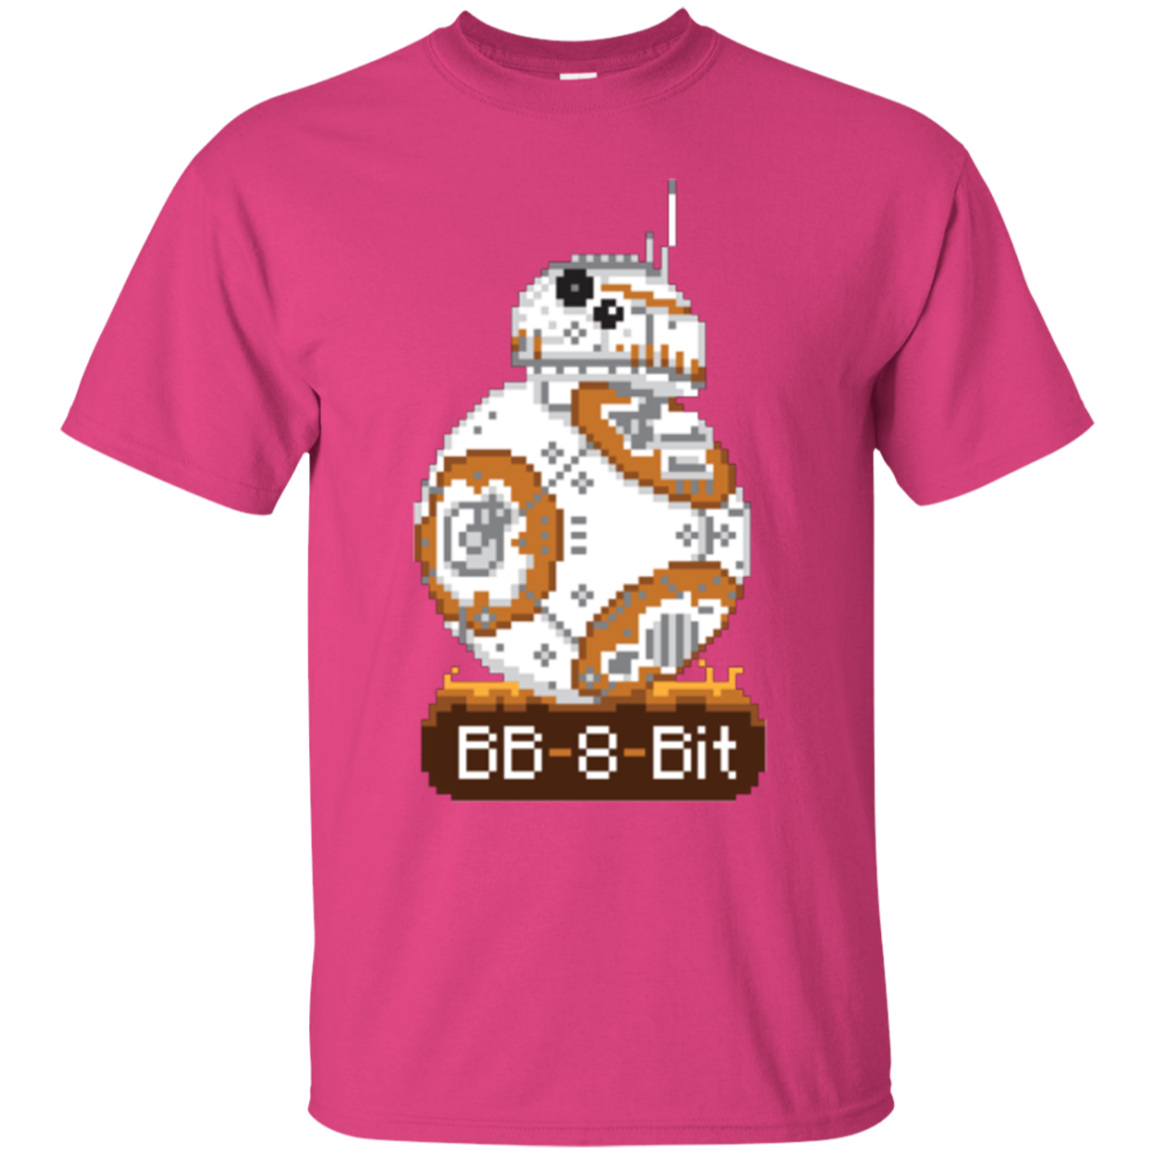 BB8Bit T-Shirt